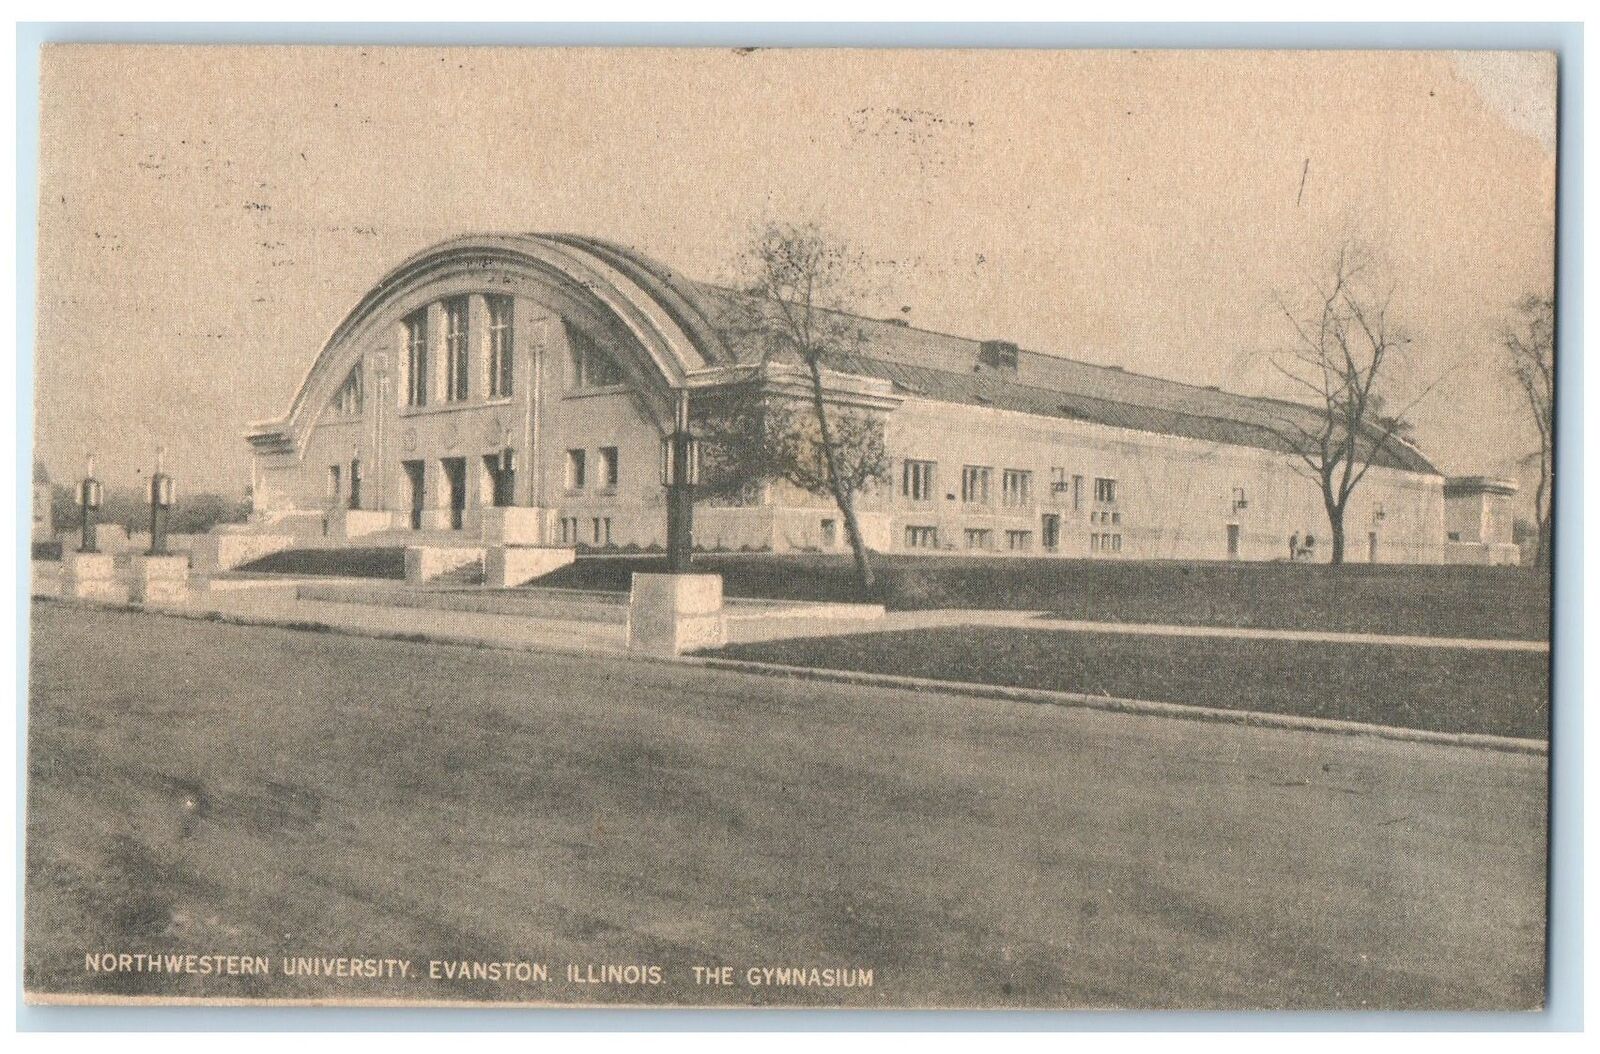 1911 Illinois The Gymnasium Northwestern University Evanston Illinois Postcard